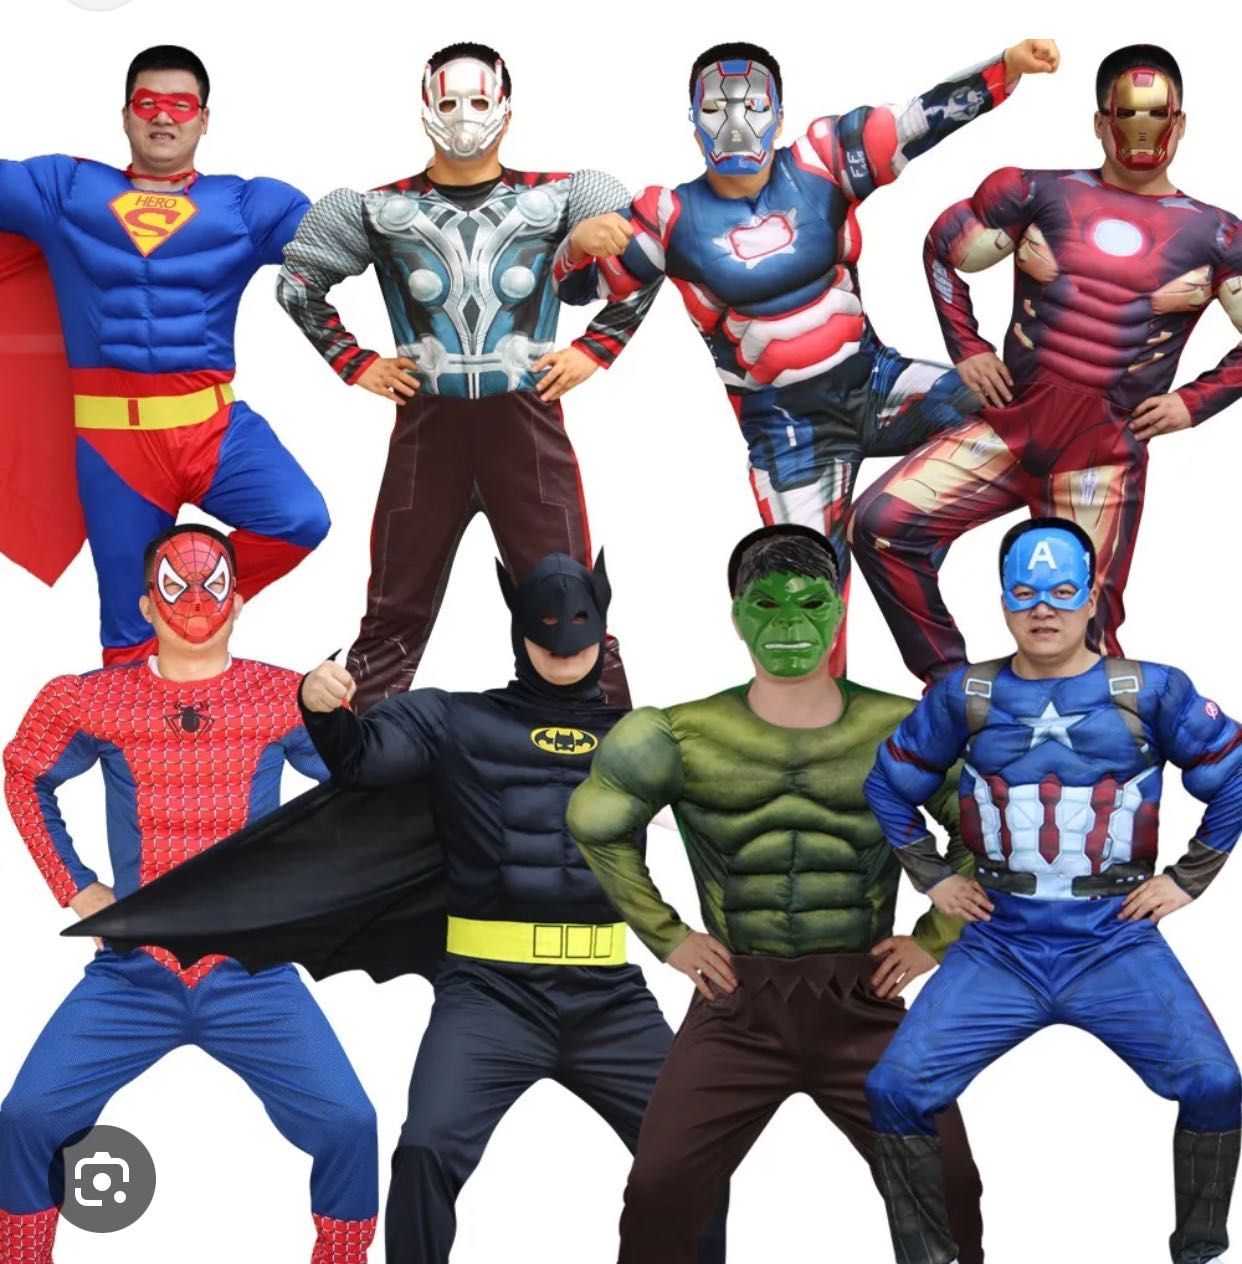 Прокат костюмов Супер герои для взрослых